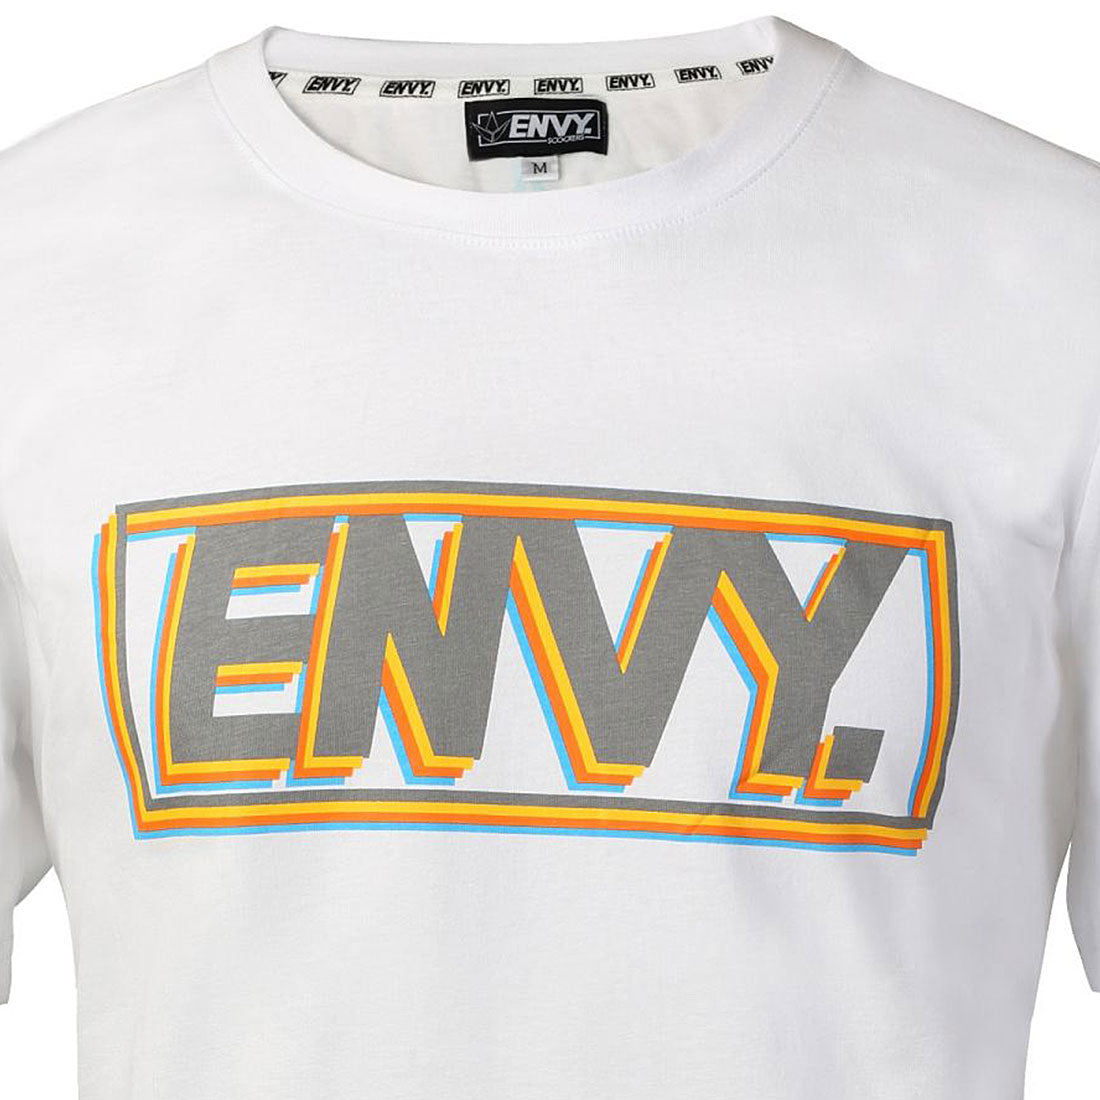 Envy Joy T-Shirt - White Apparel Tshirts